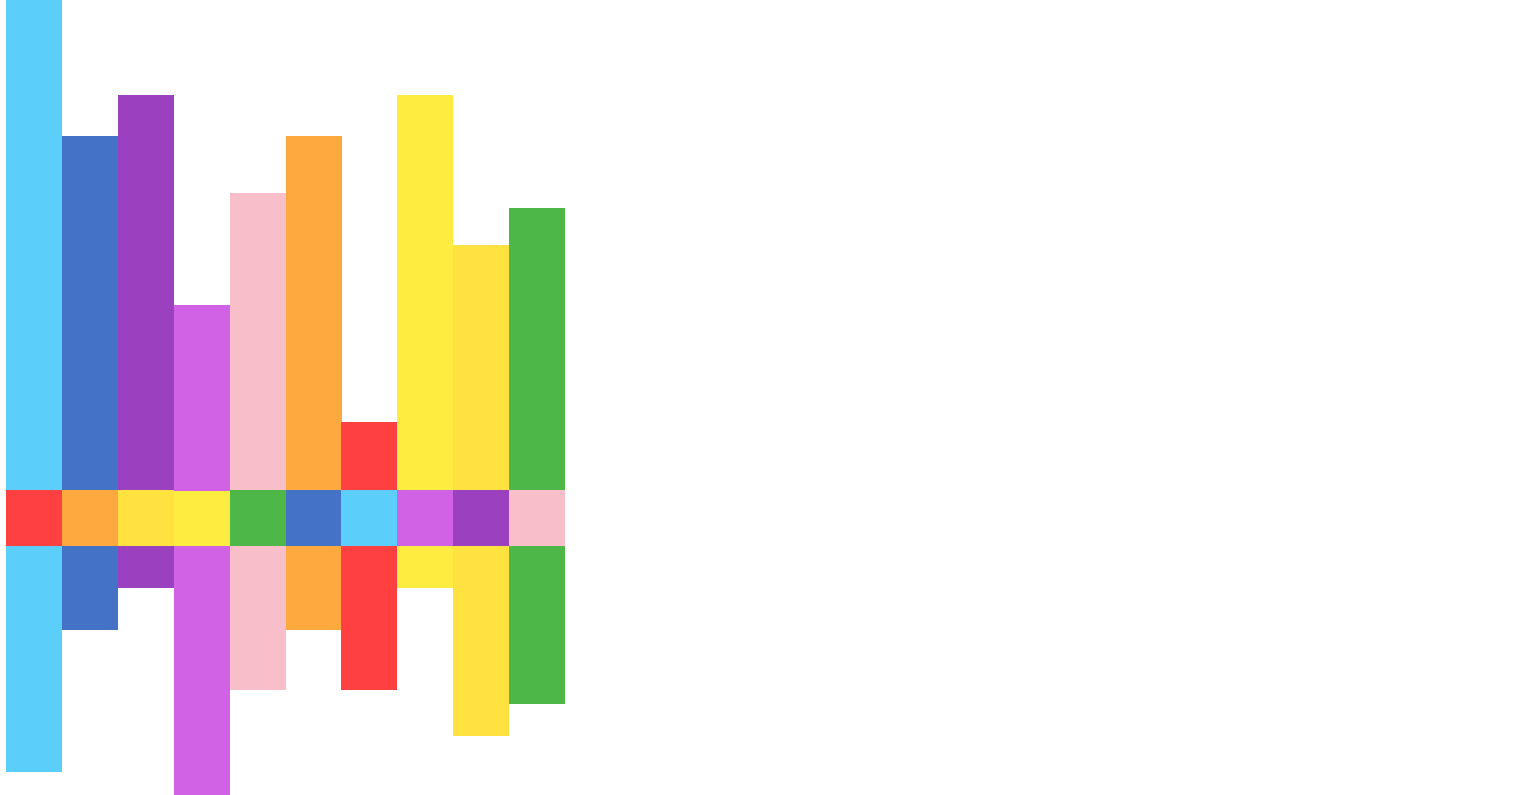 QueerUp Radio